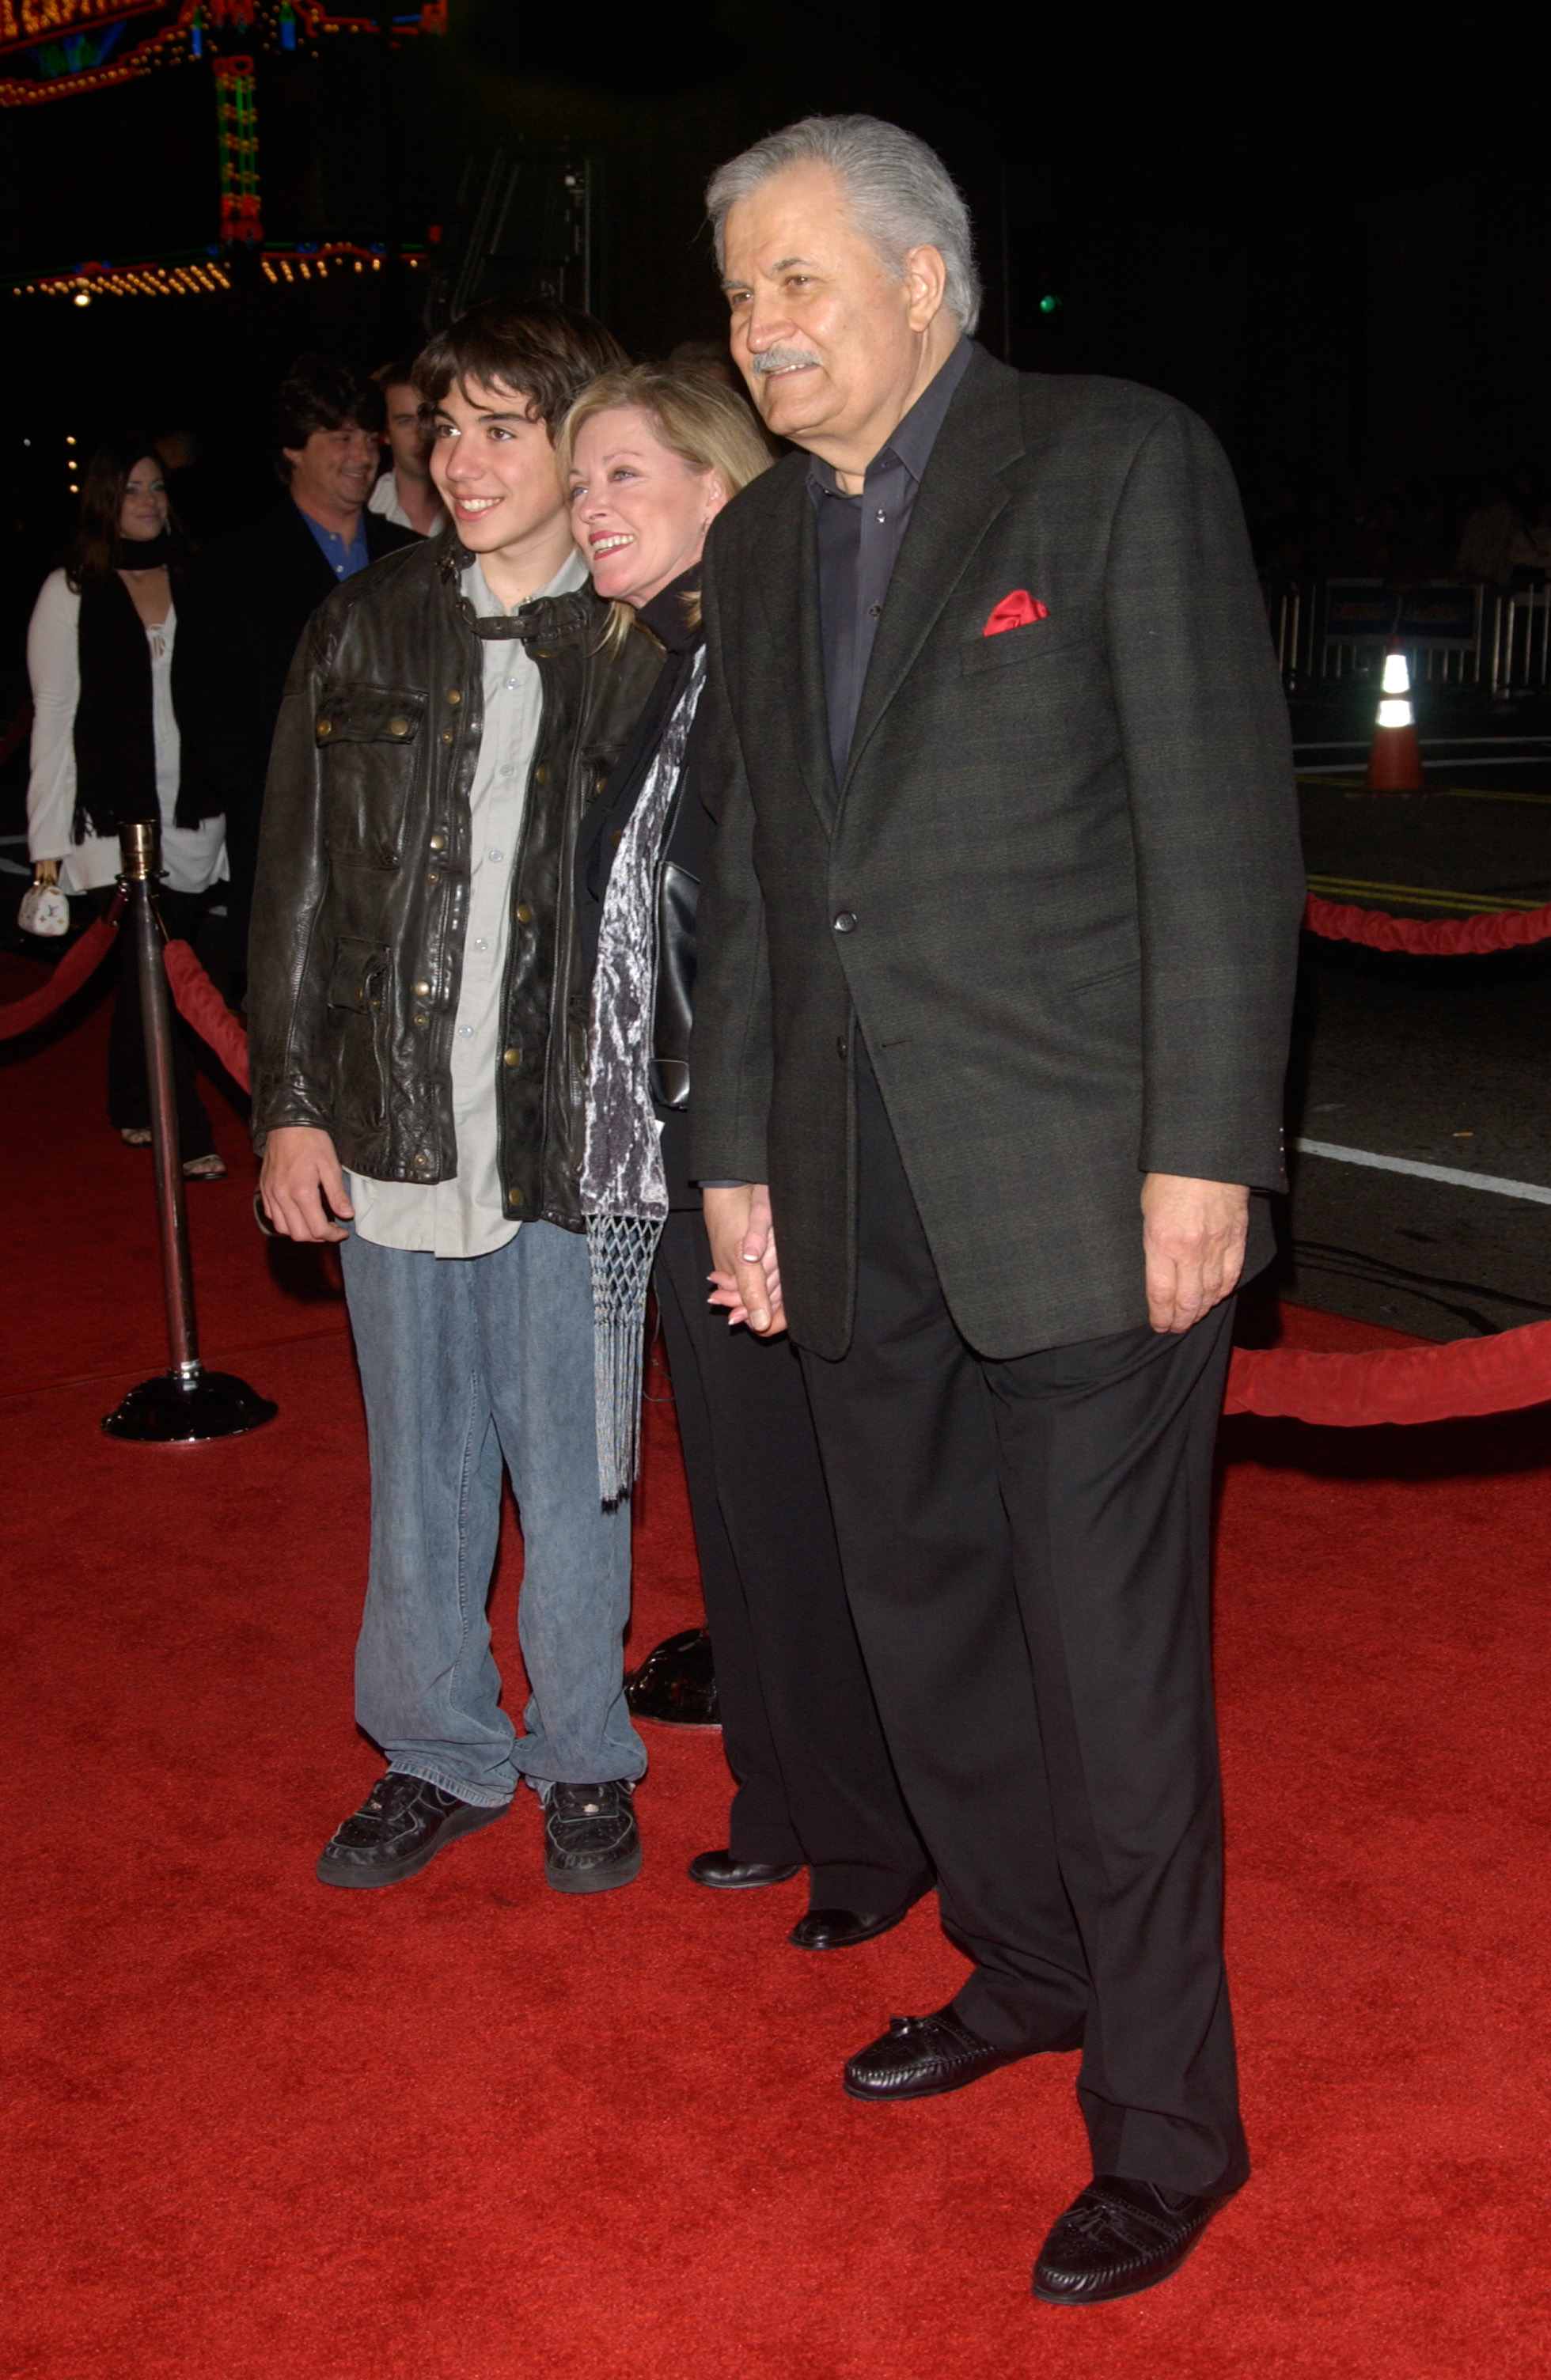 John Aniston mit seiner Frau Sherry Rooney und Sohn Alexander in Kalifornien im Jahr 2004 | Quelle: Shutterstock